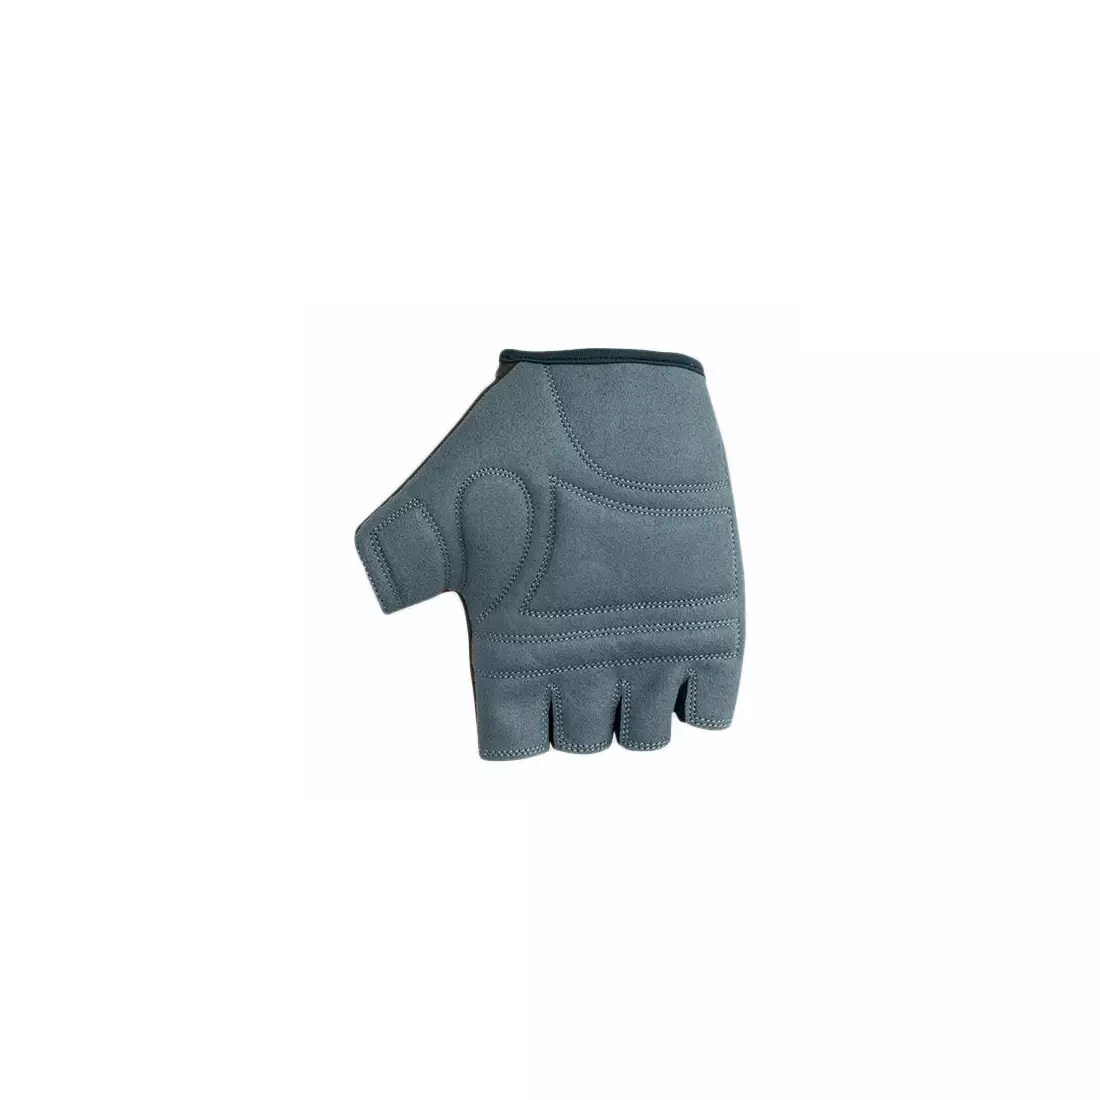 POLEDNIK gloves F4 NEW15, color: blue